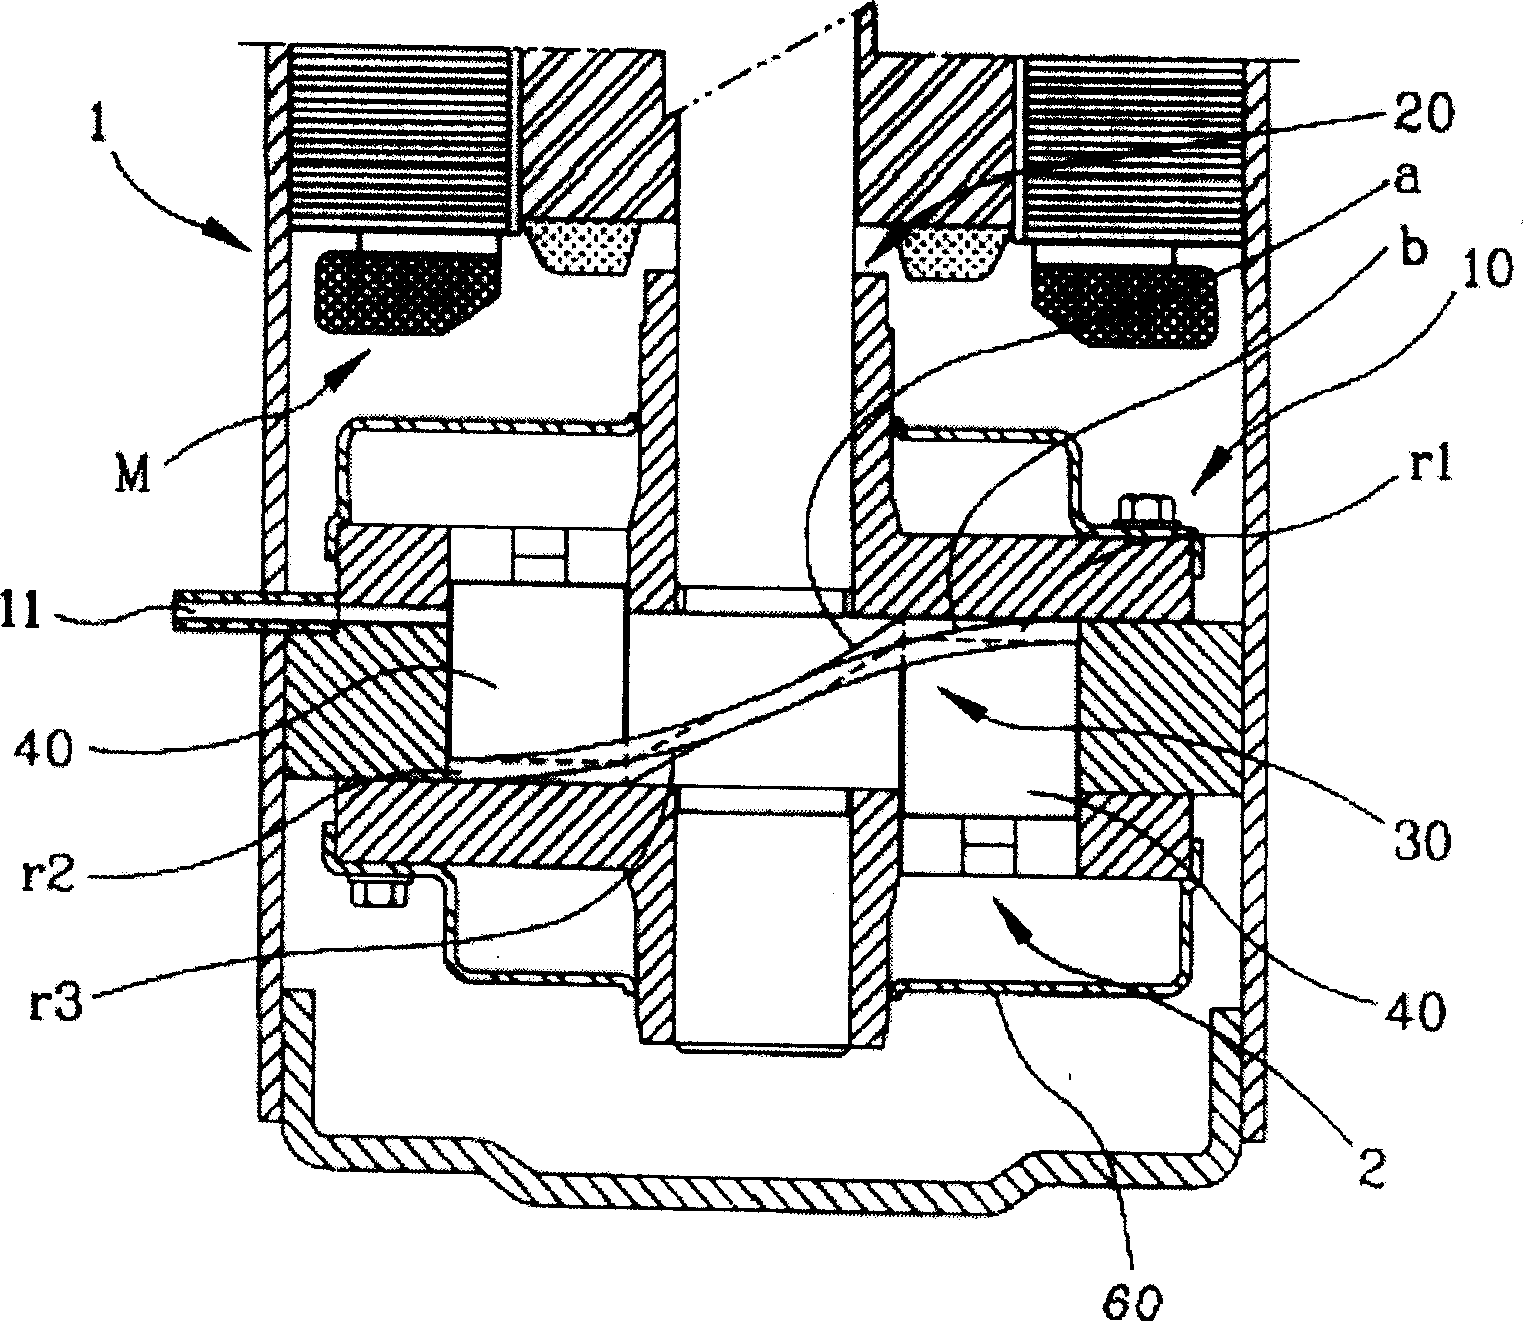 Compressor impeller structure